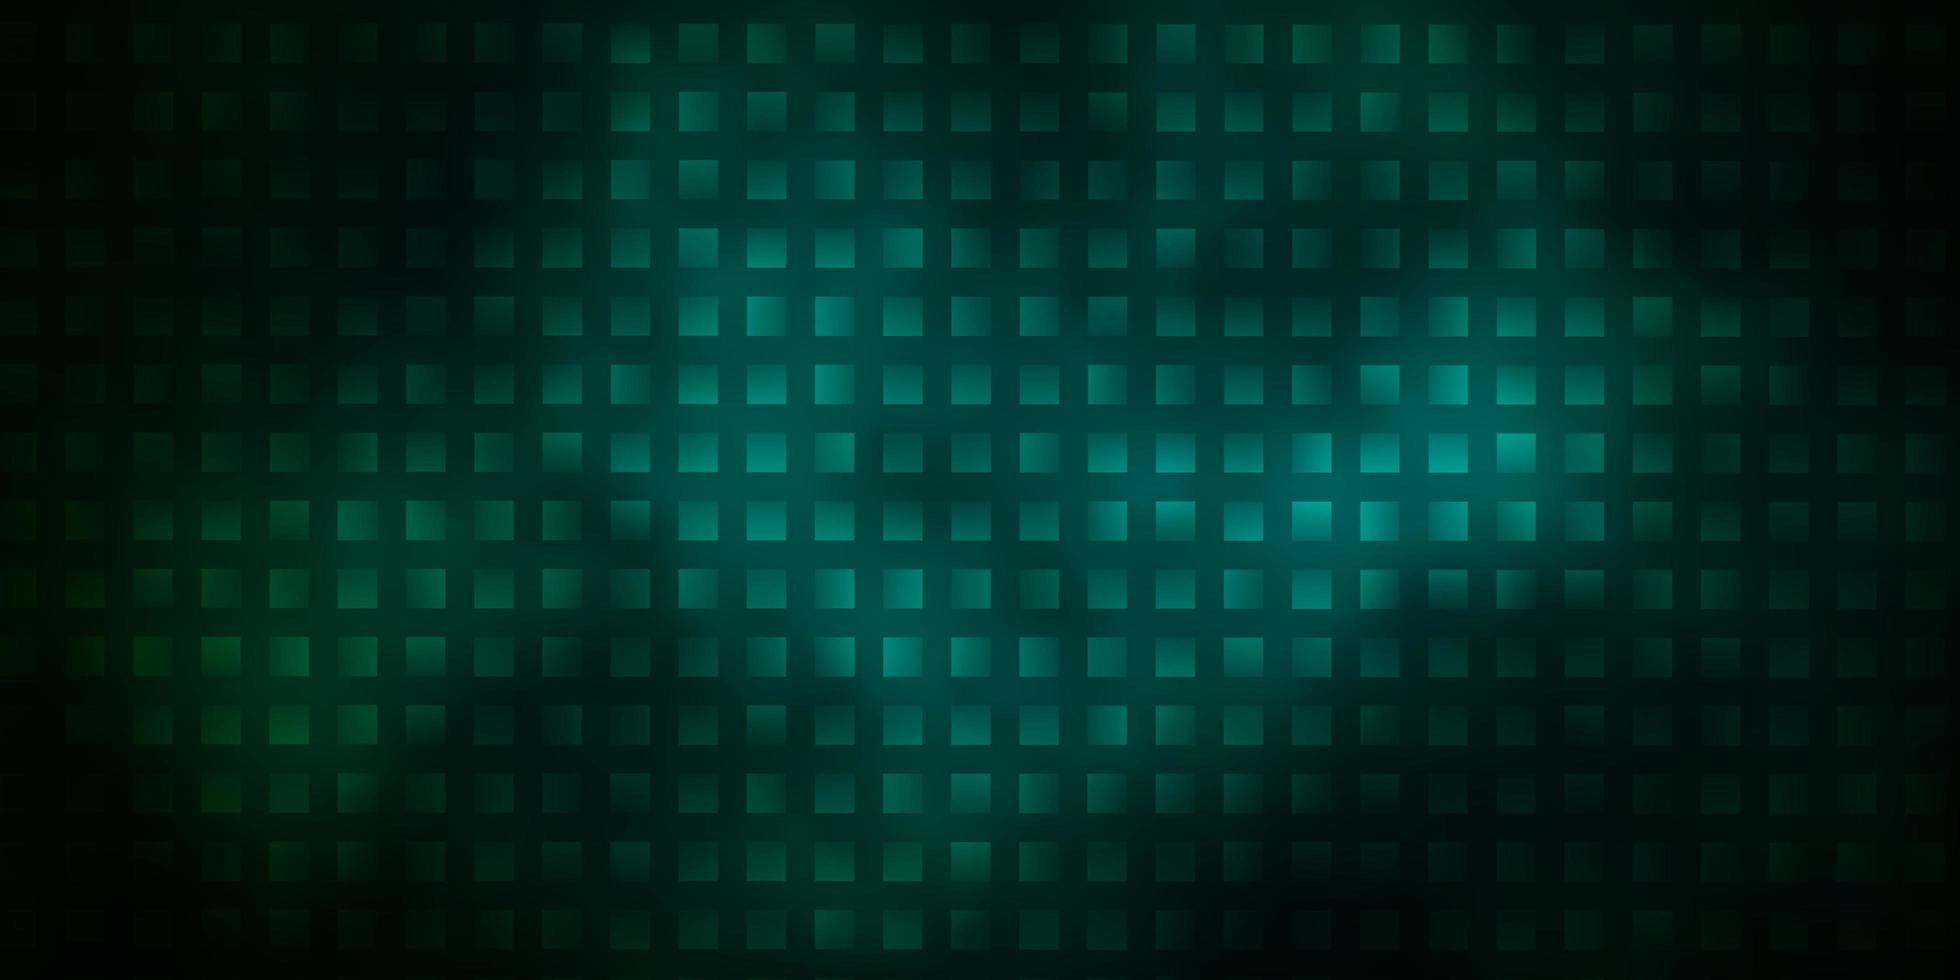 toile de fond de vecteur vert foncé avec des rectangles.